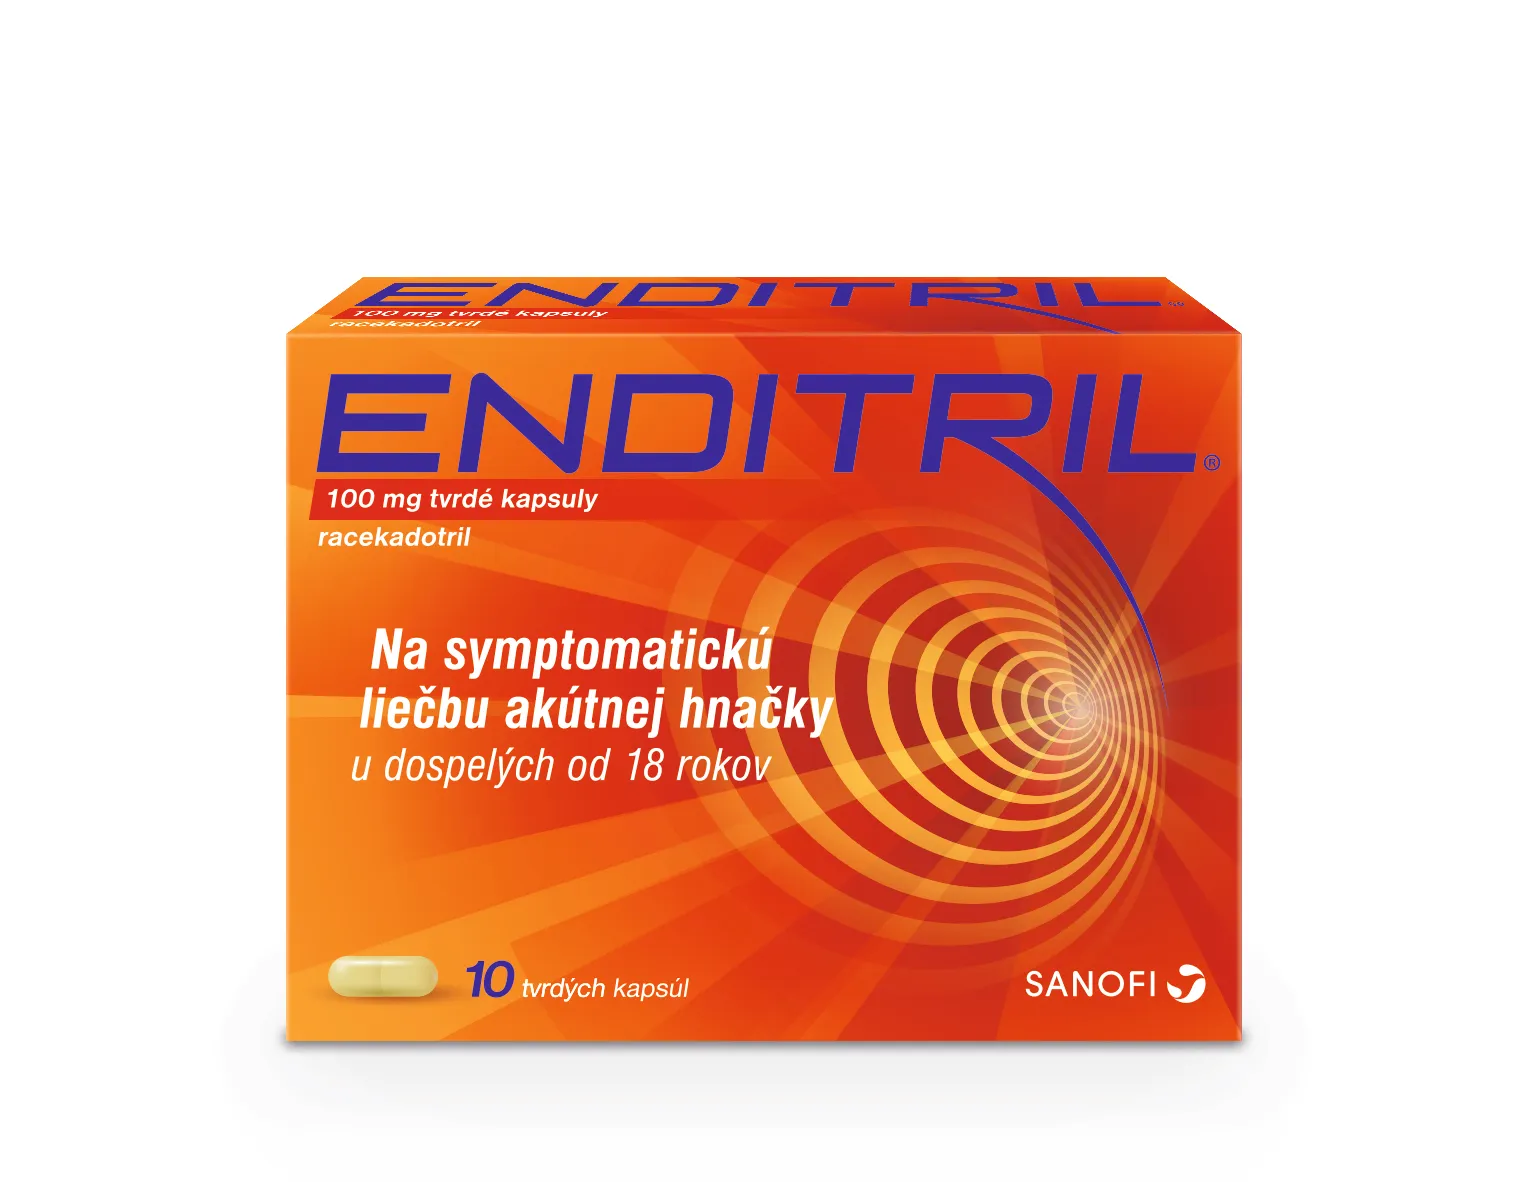 Enditril 100 mg 10 kapsúl 1×10 cps, liek